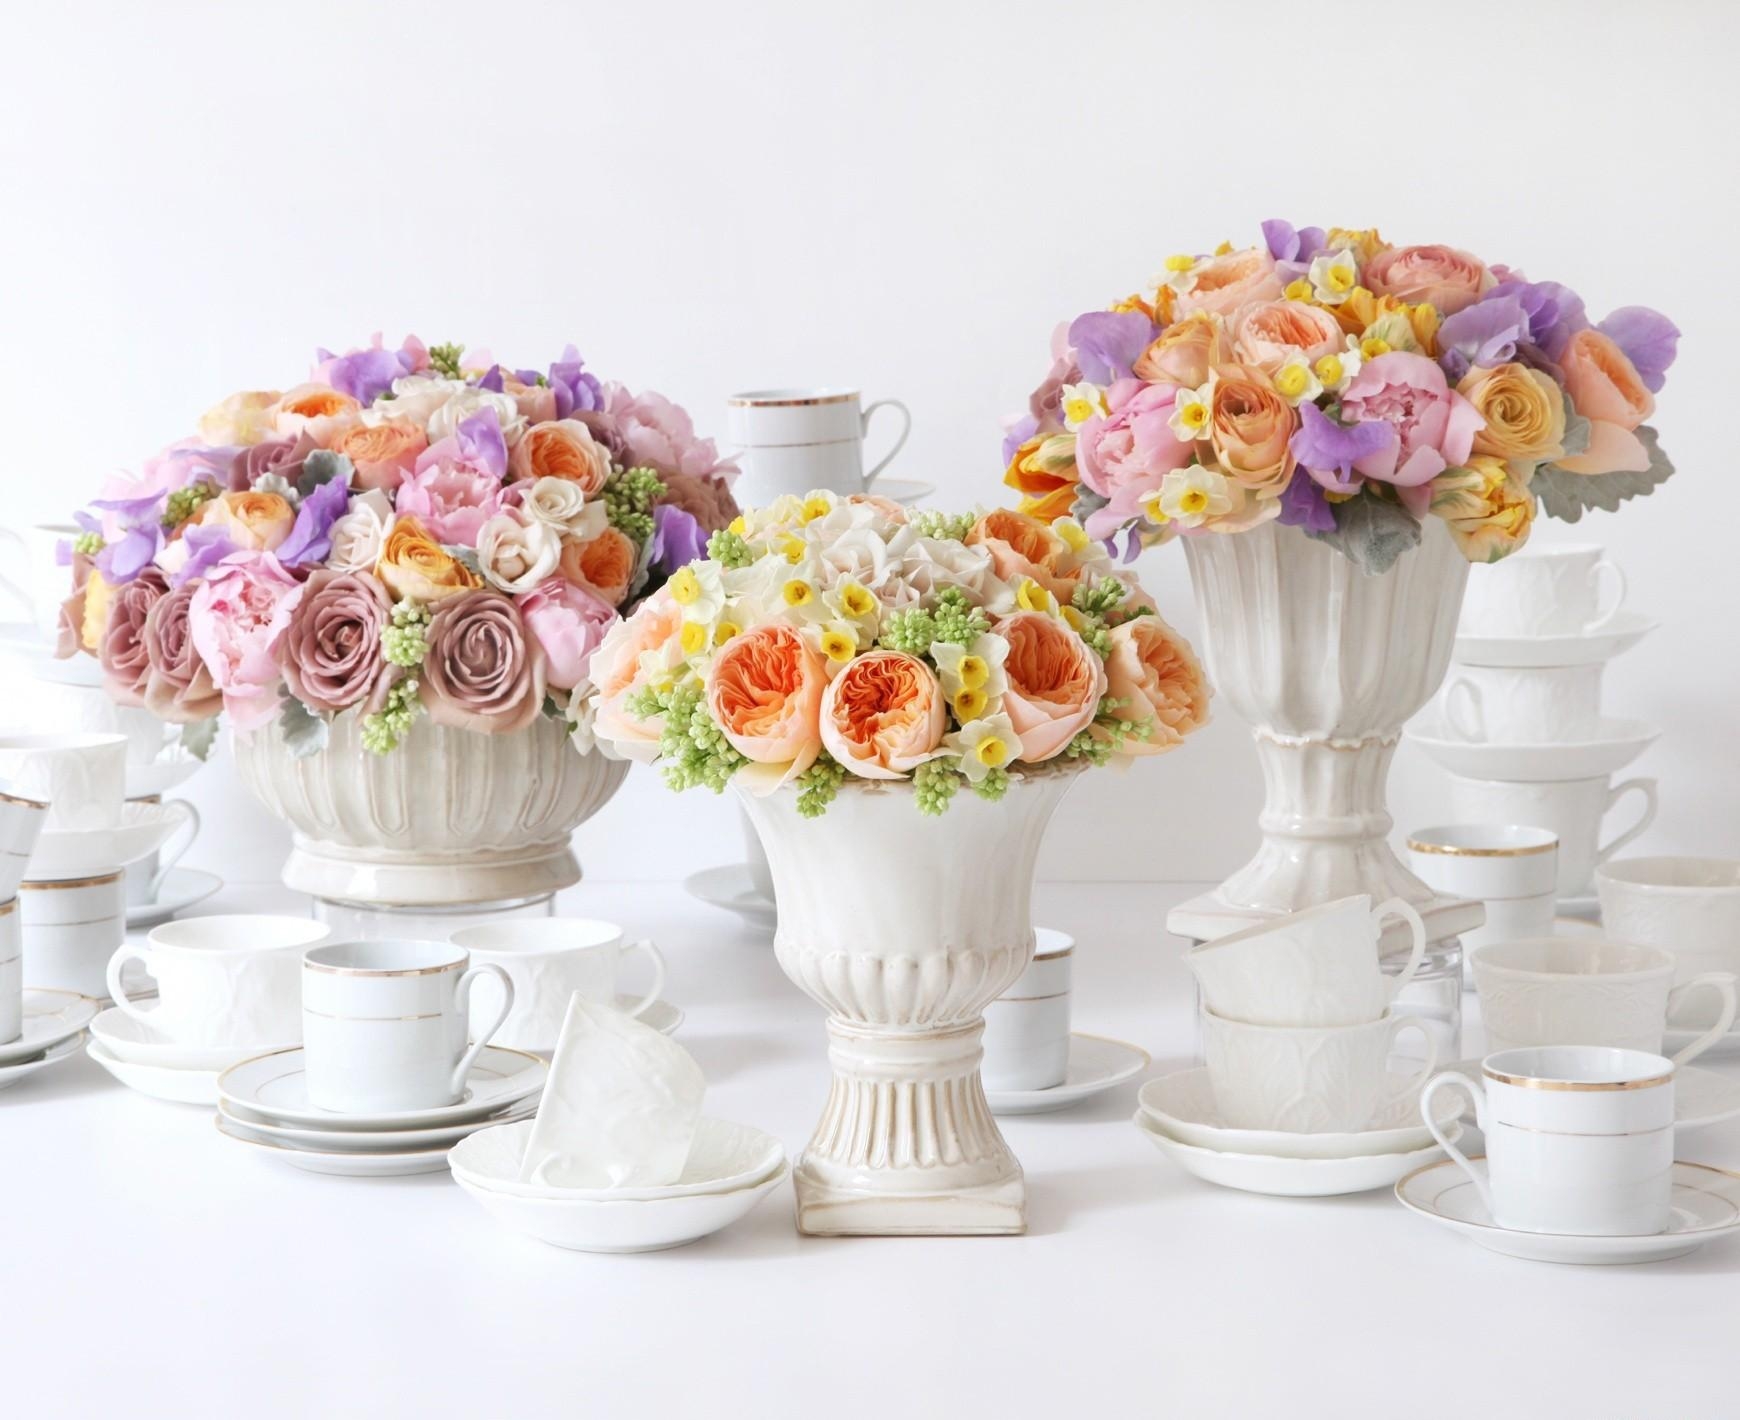 roses, narcissussi, flowers, bouquets, ranunculus, ranunkulus, vases, porcelain 5K